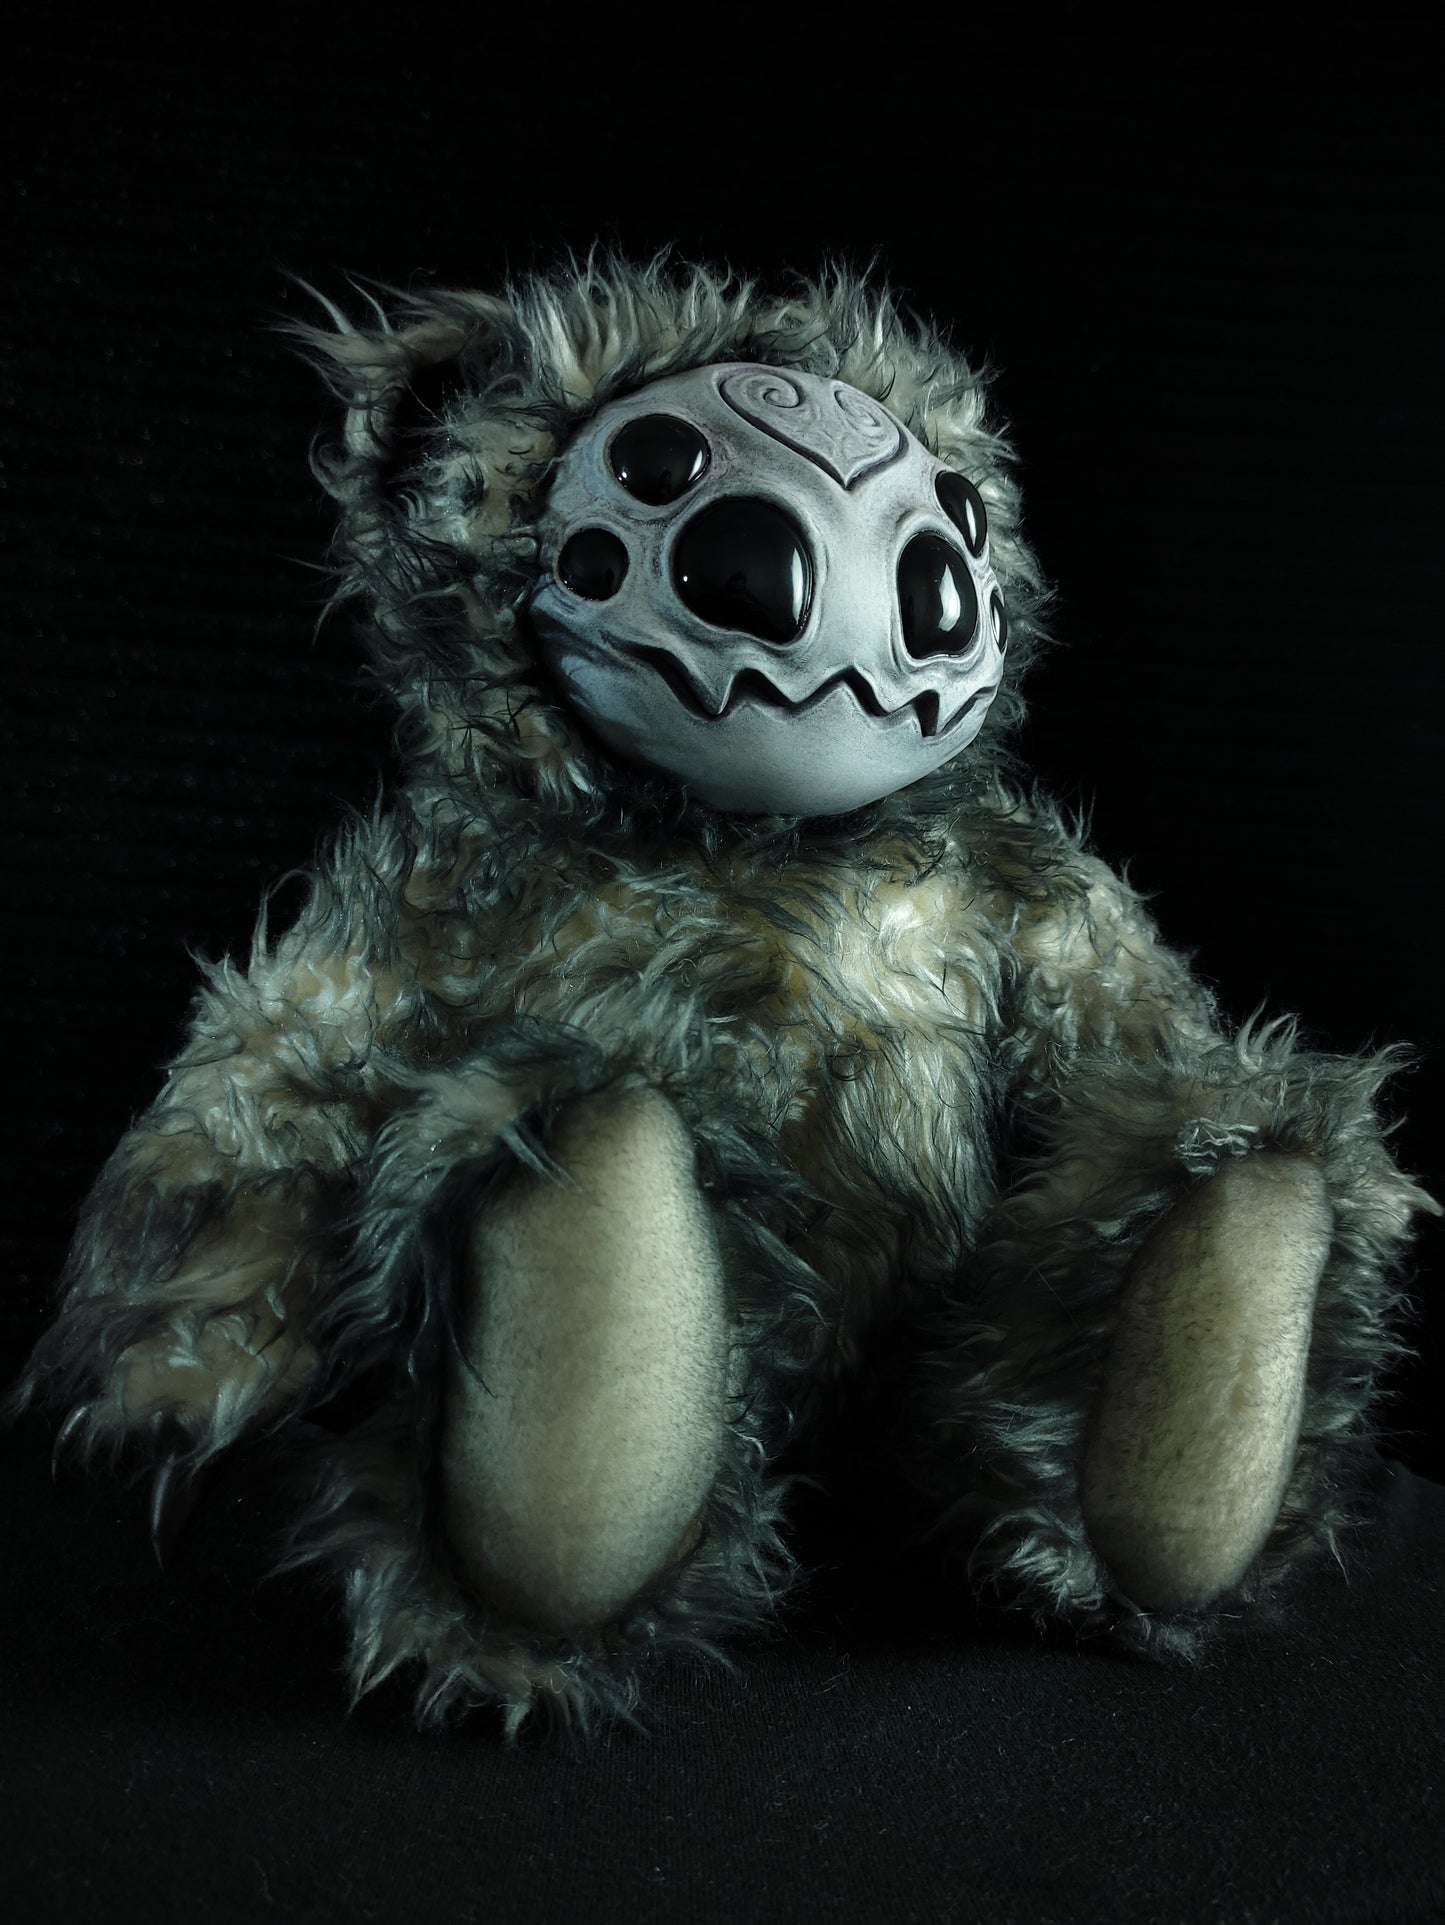 Arakobe (Goulrond Ver.) - Monster Art Doll Plush Toy